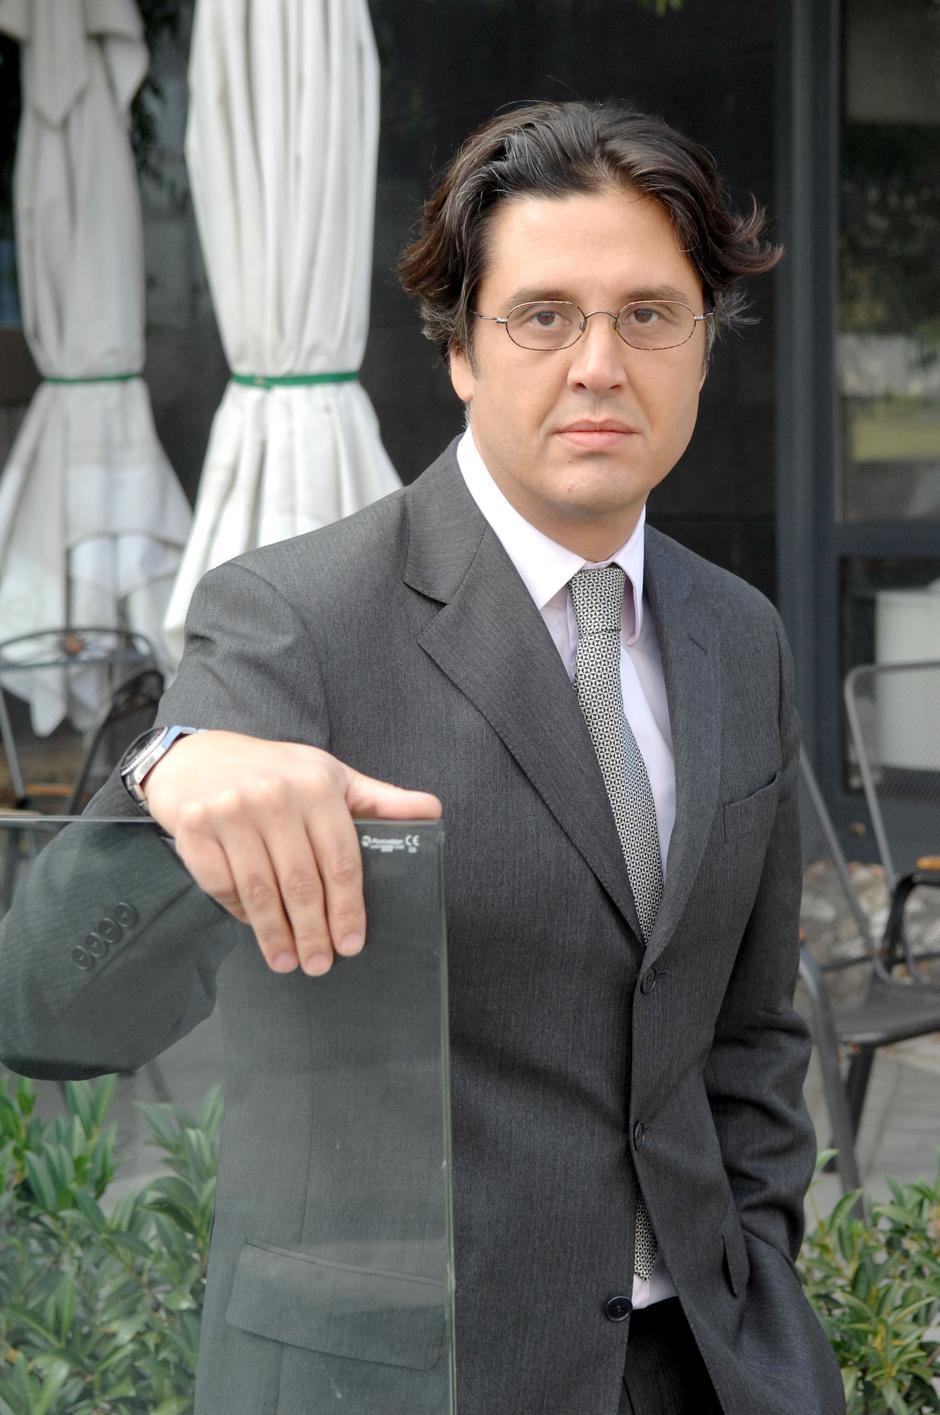 Vladimir Šelebaj | Author: Davor Visnjic (PIXSELL)